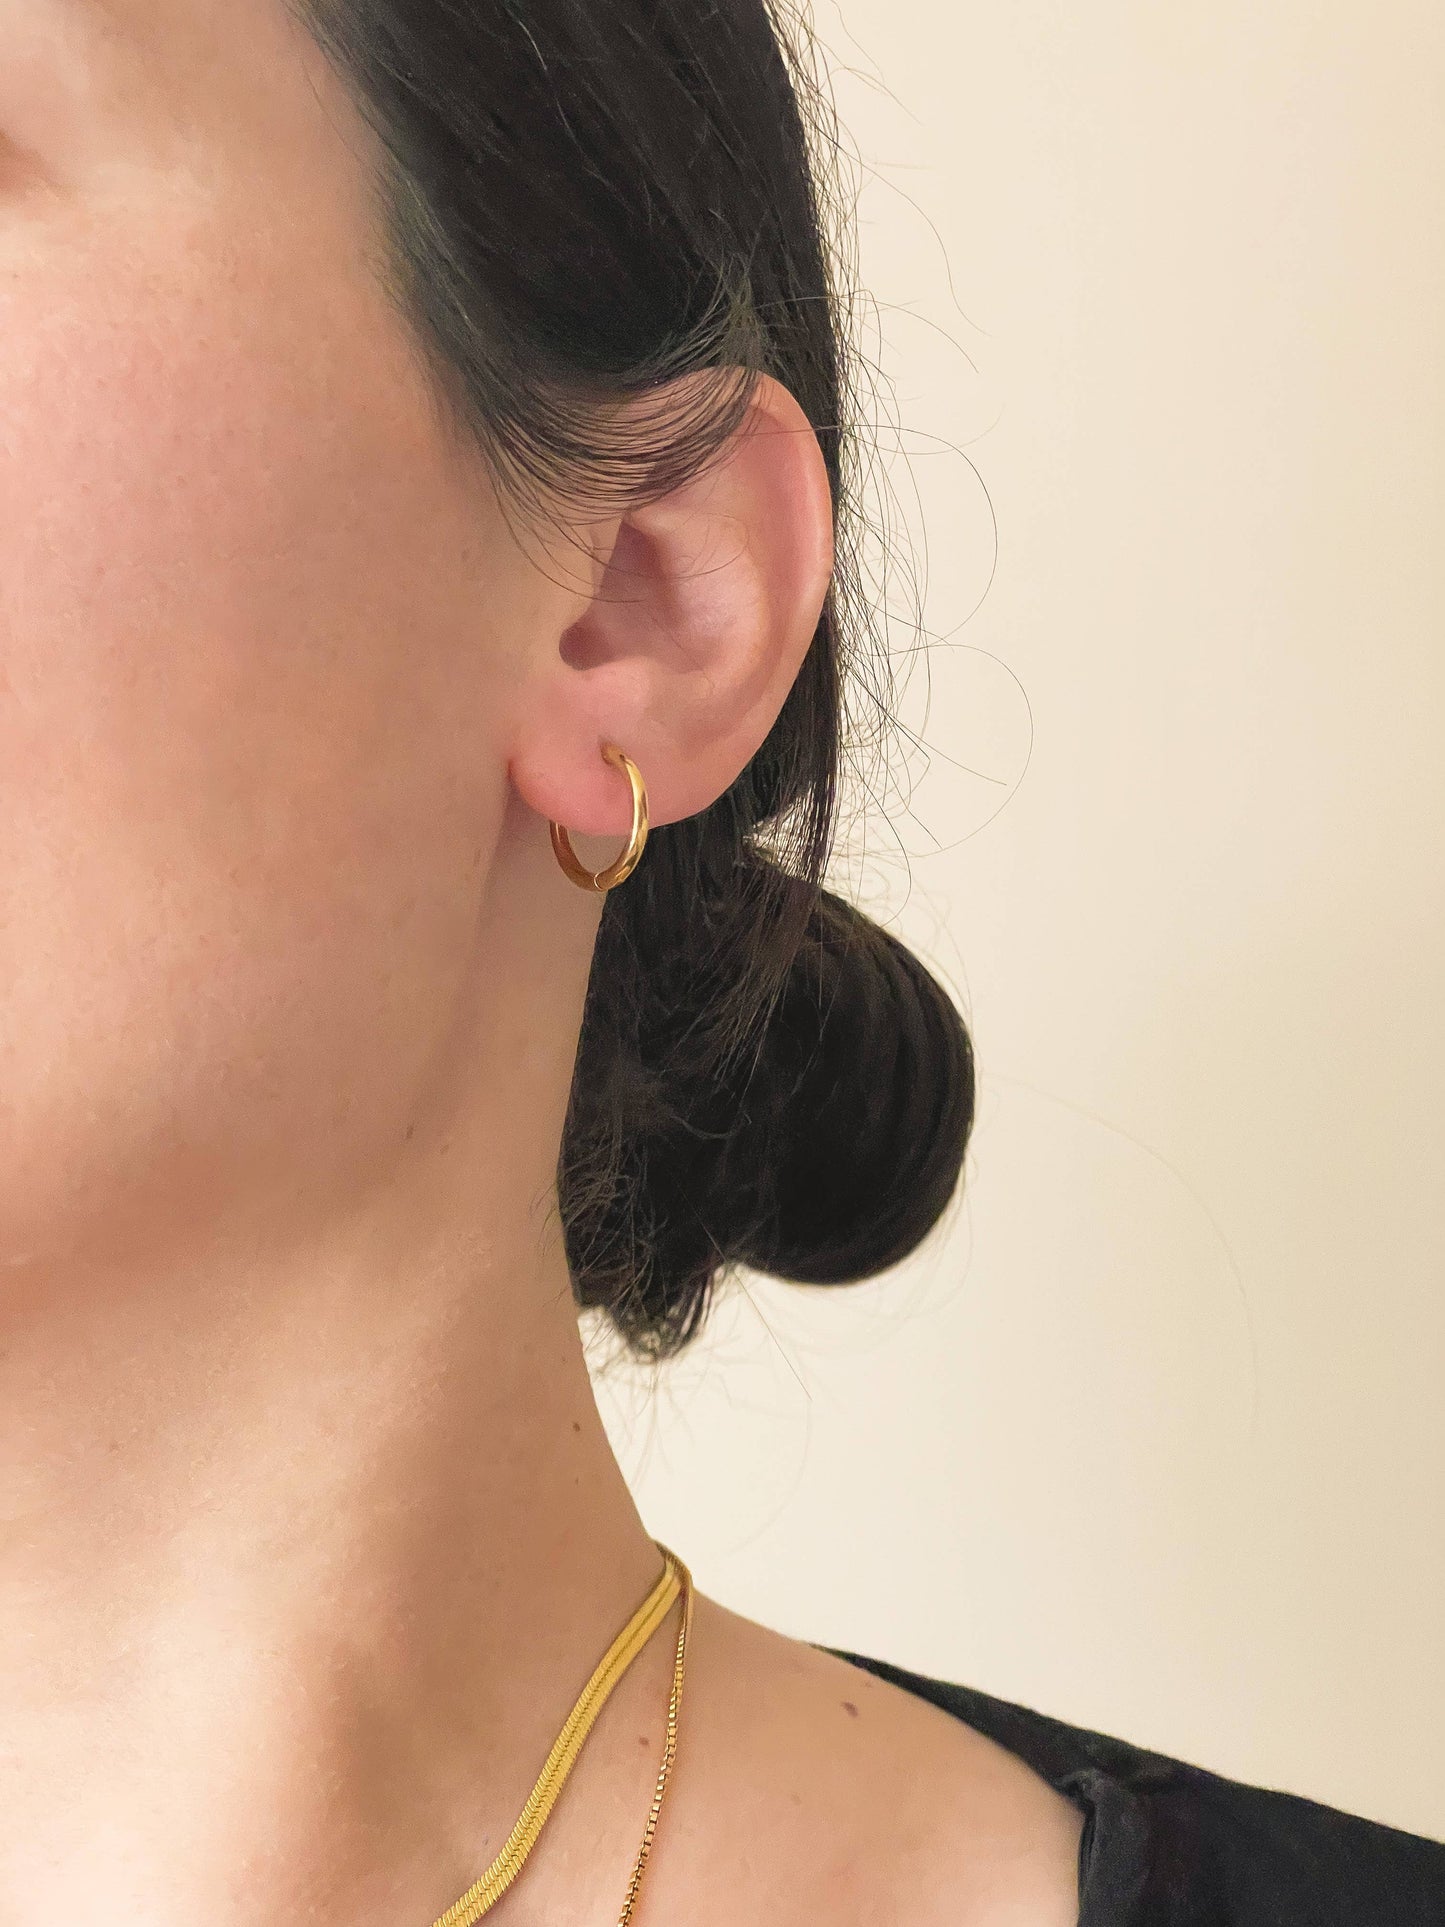 Thin Gold Hoops - Gold Huggie Hoop Earrings Minimalist 0334: 10 MM